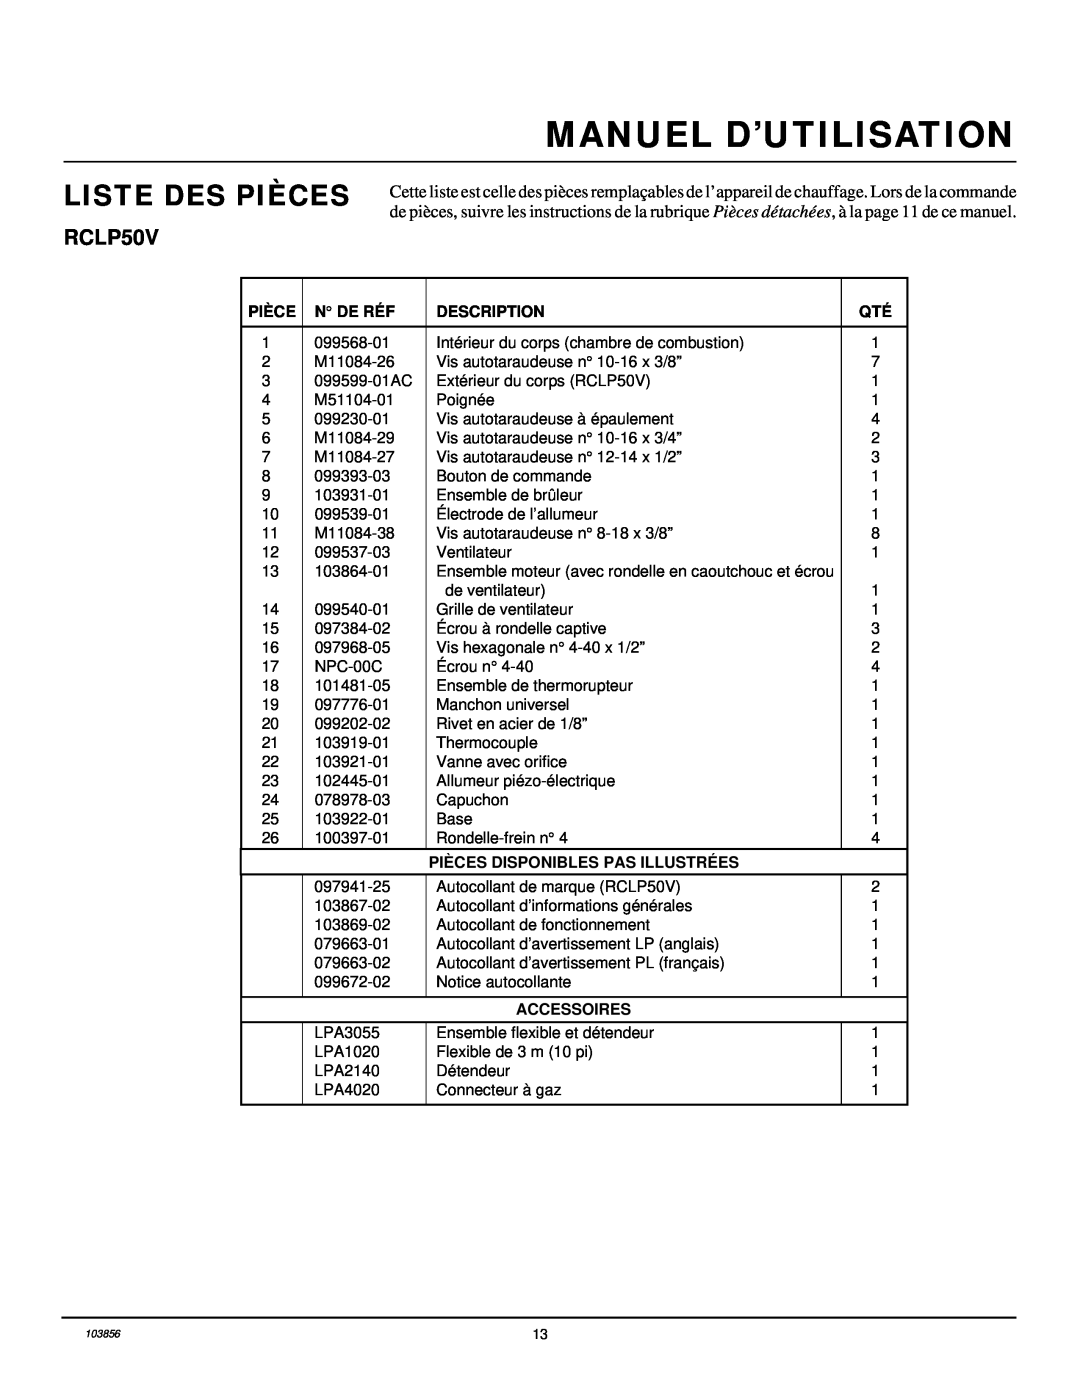 Desa RCLP50V Liste Des Pièces, Manuel D’Utilisation, N De Réf, Description, Pièces Disponibles Pas Illustrées, Accessoires 